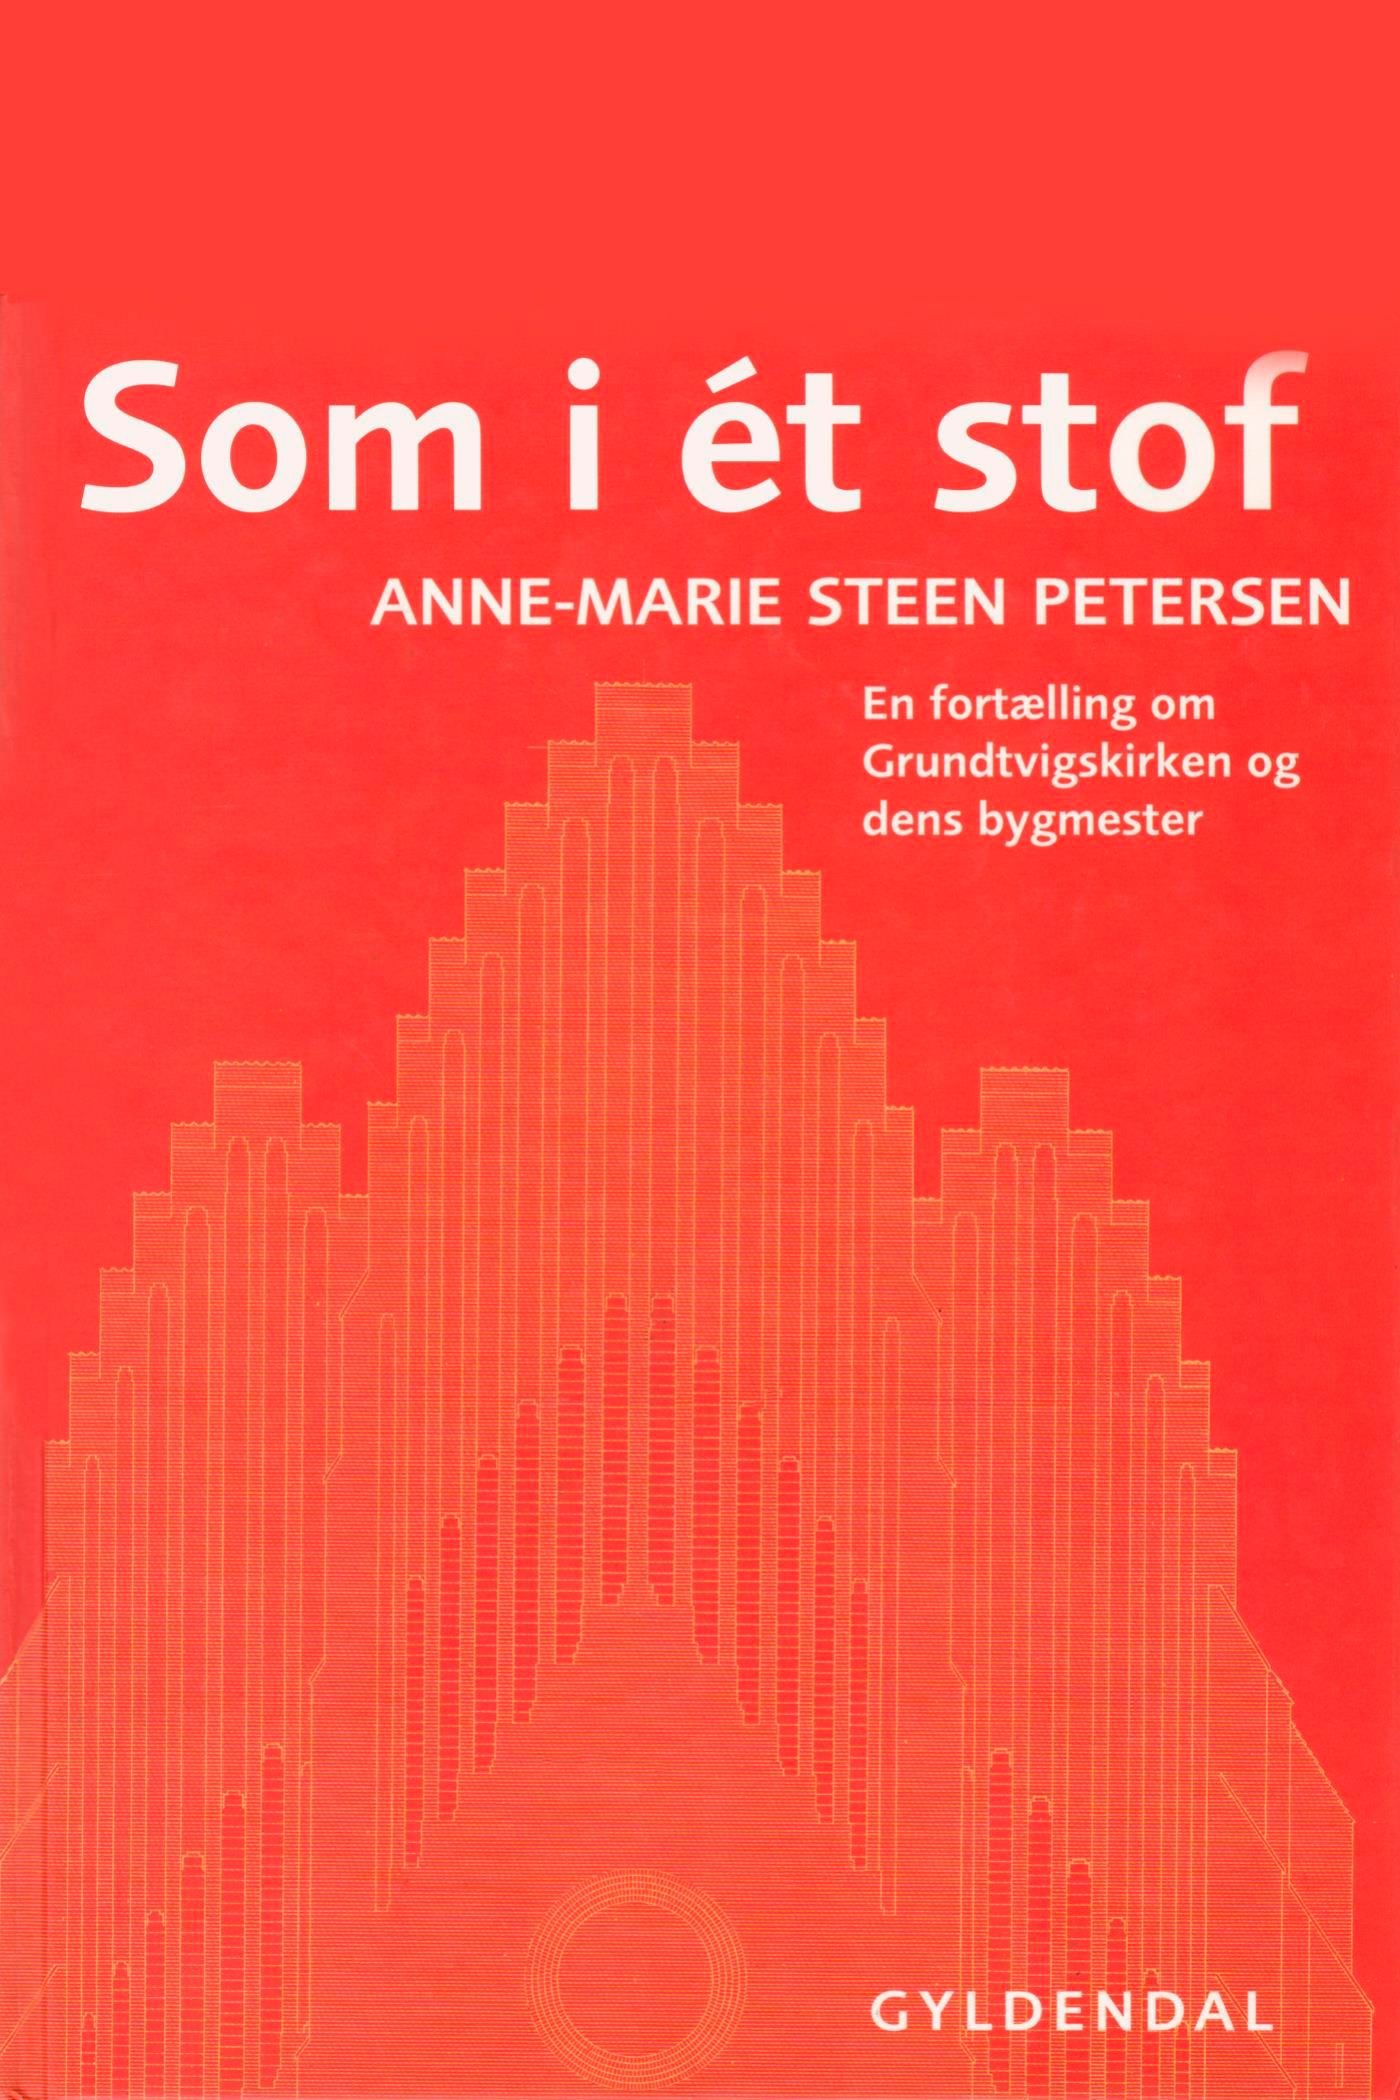 Som i ét stof, e-bog af Anne-Marie Steen Petersen